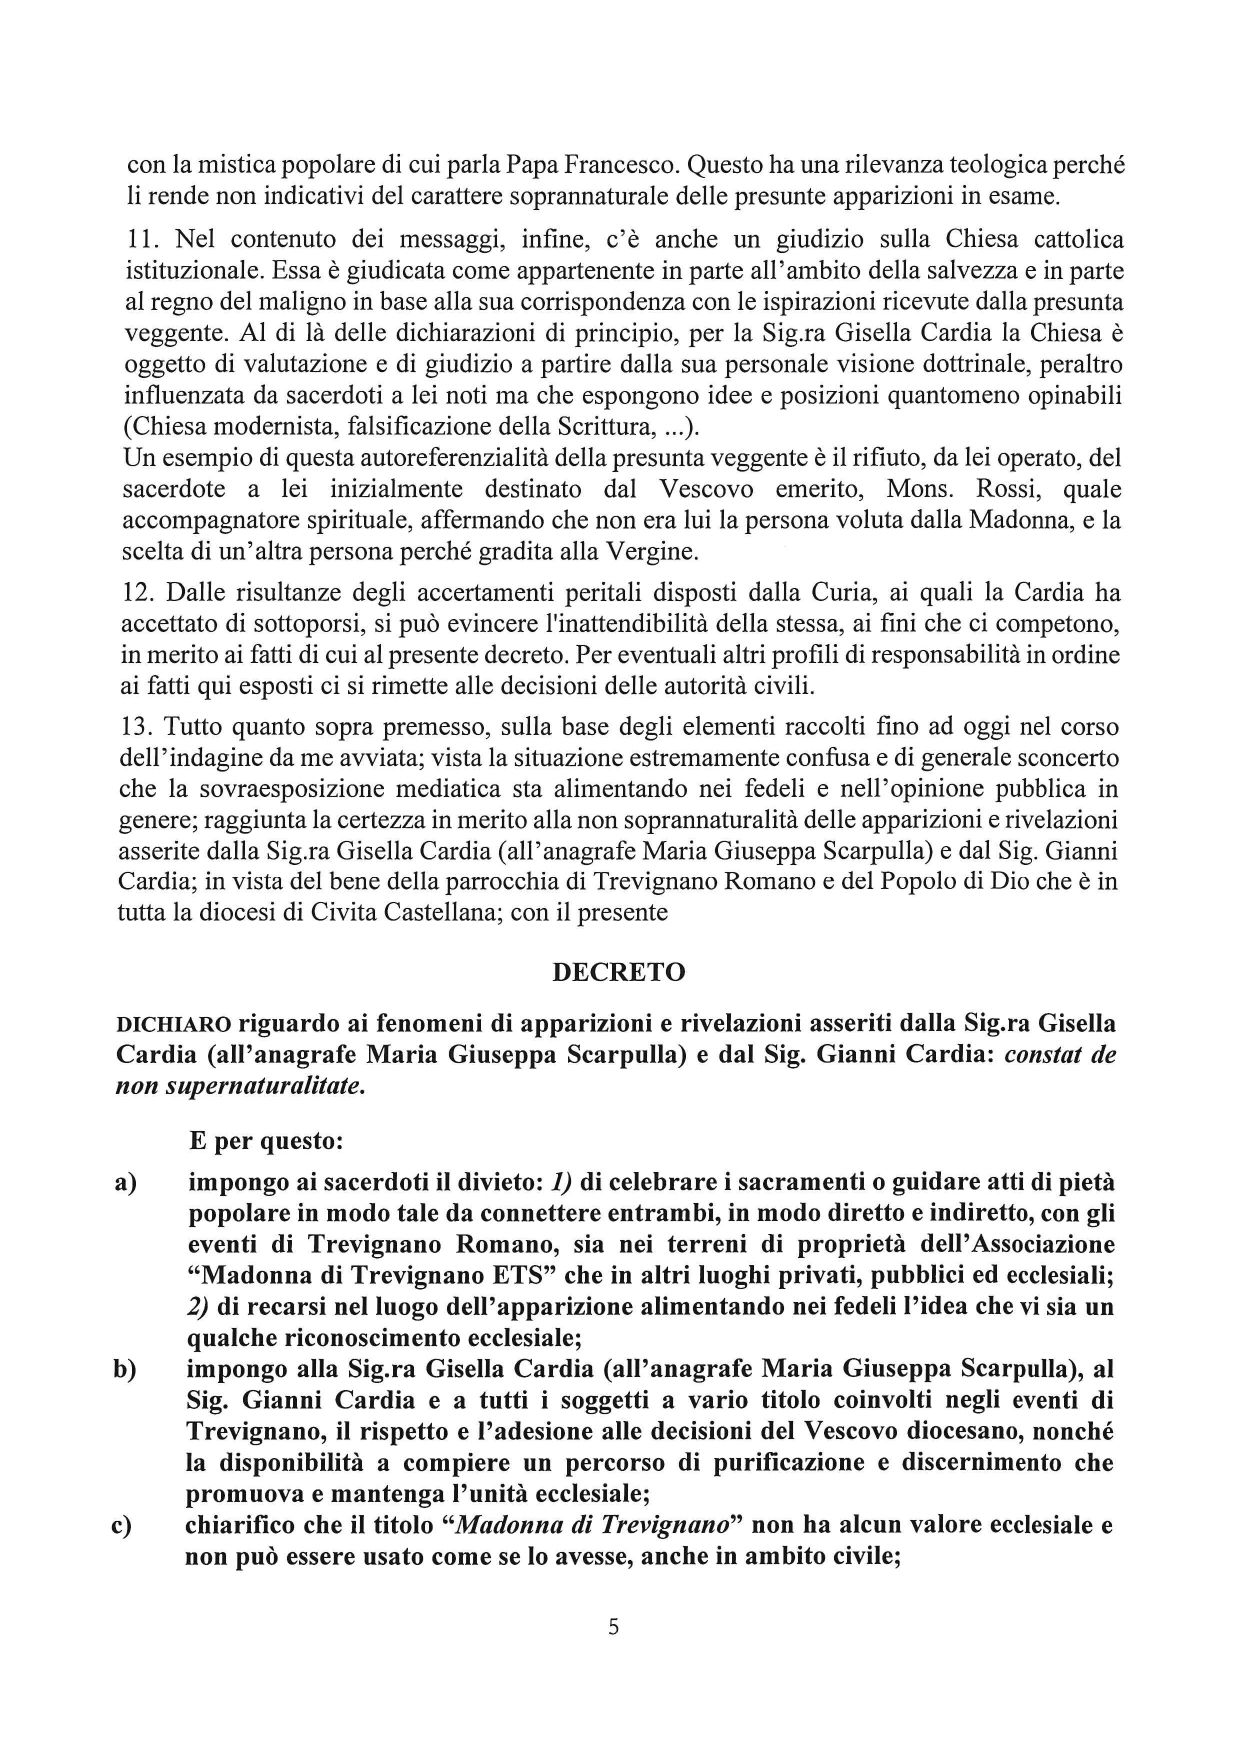 Decreto-Trevignano_240306_094058_page-0005 Decreto su Presunte apparizioni Trevignano (RM)